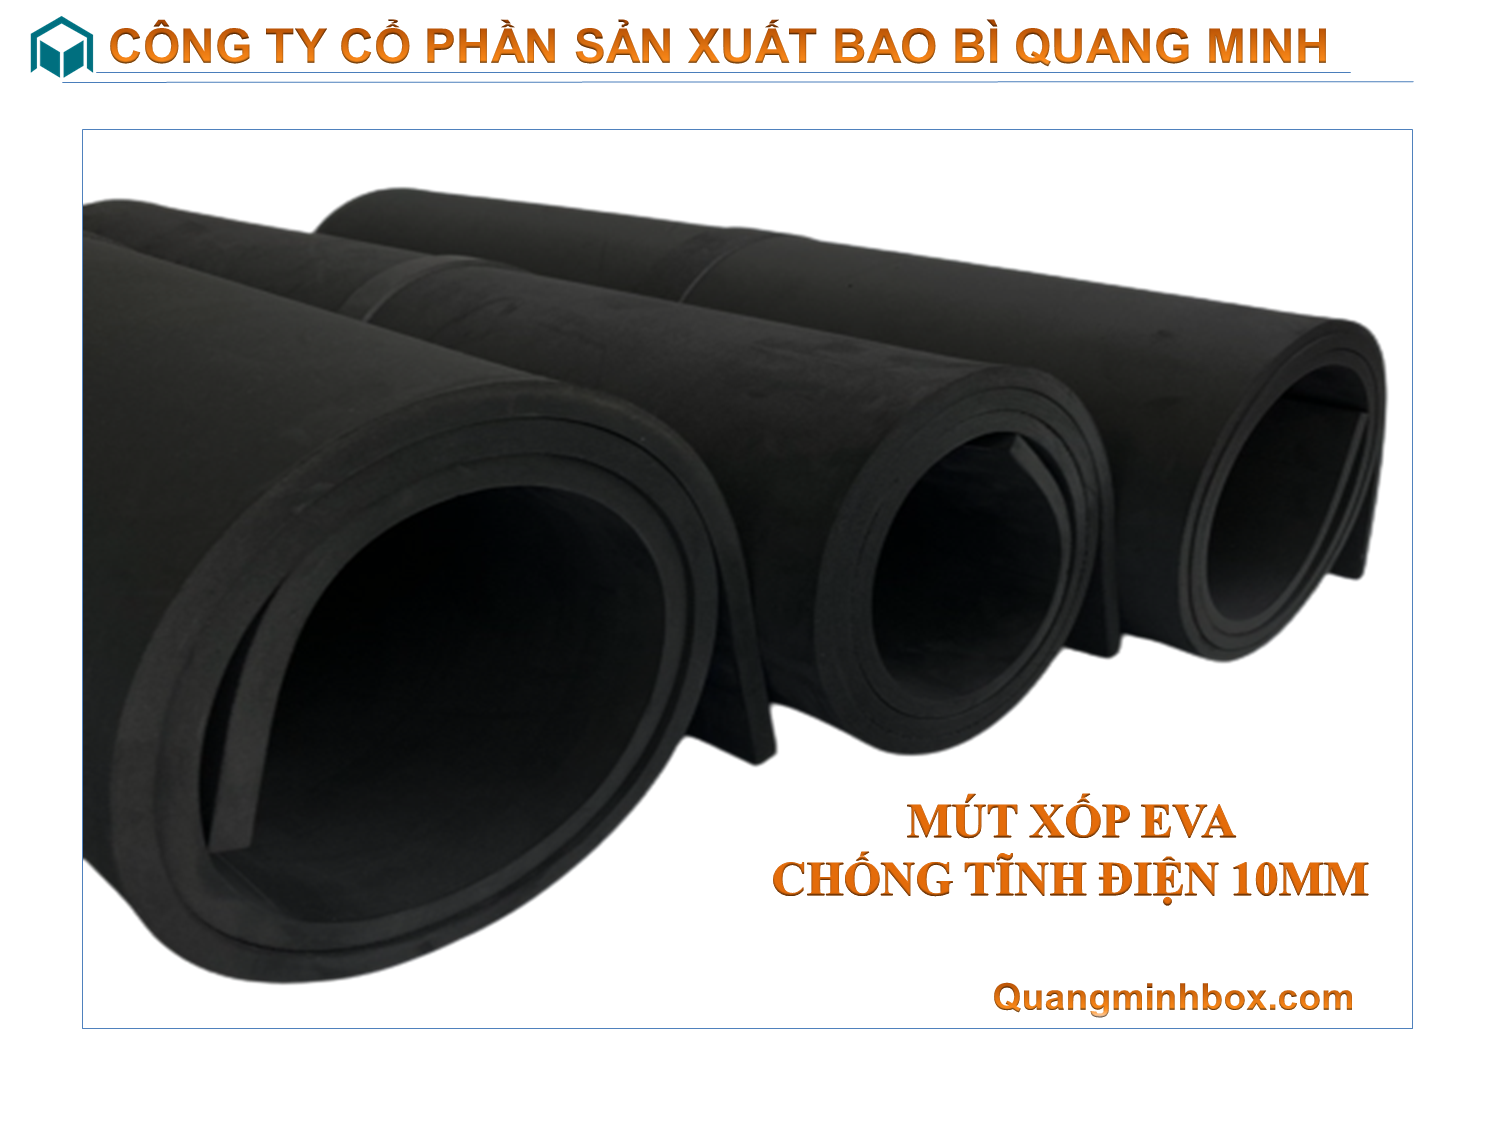 mut-xop-eva-chong-tinh-dien-10mm